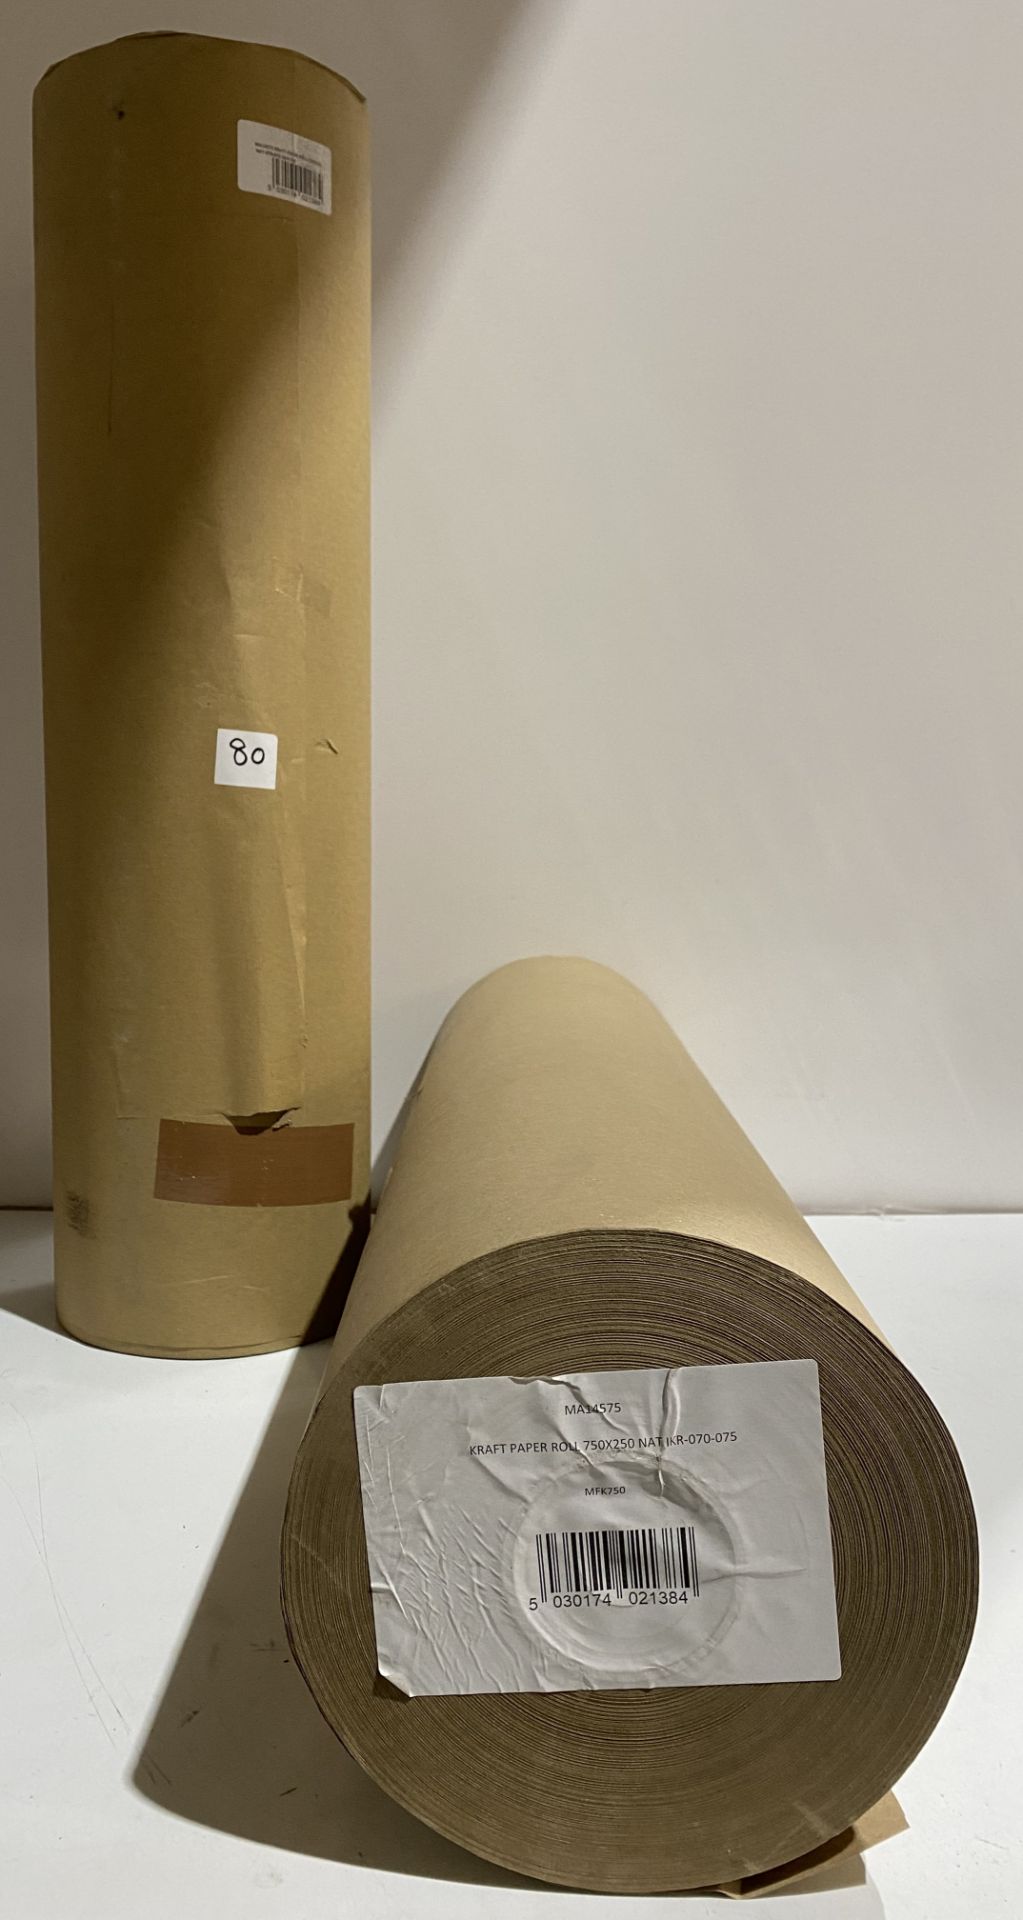 2 x rolls brown kraft paper 750mmx250mm MA14575 (saleroom location: G08)